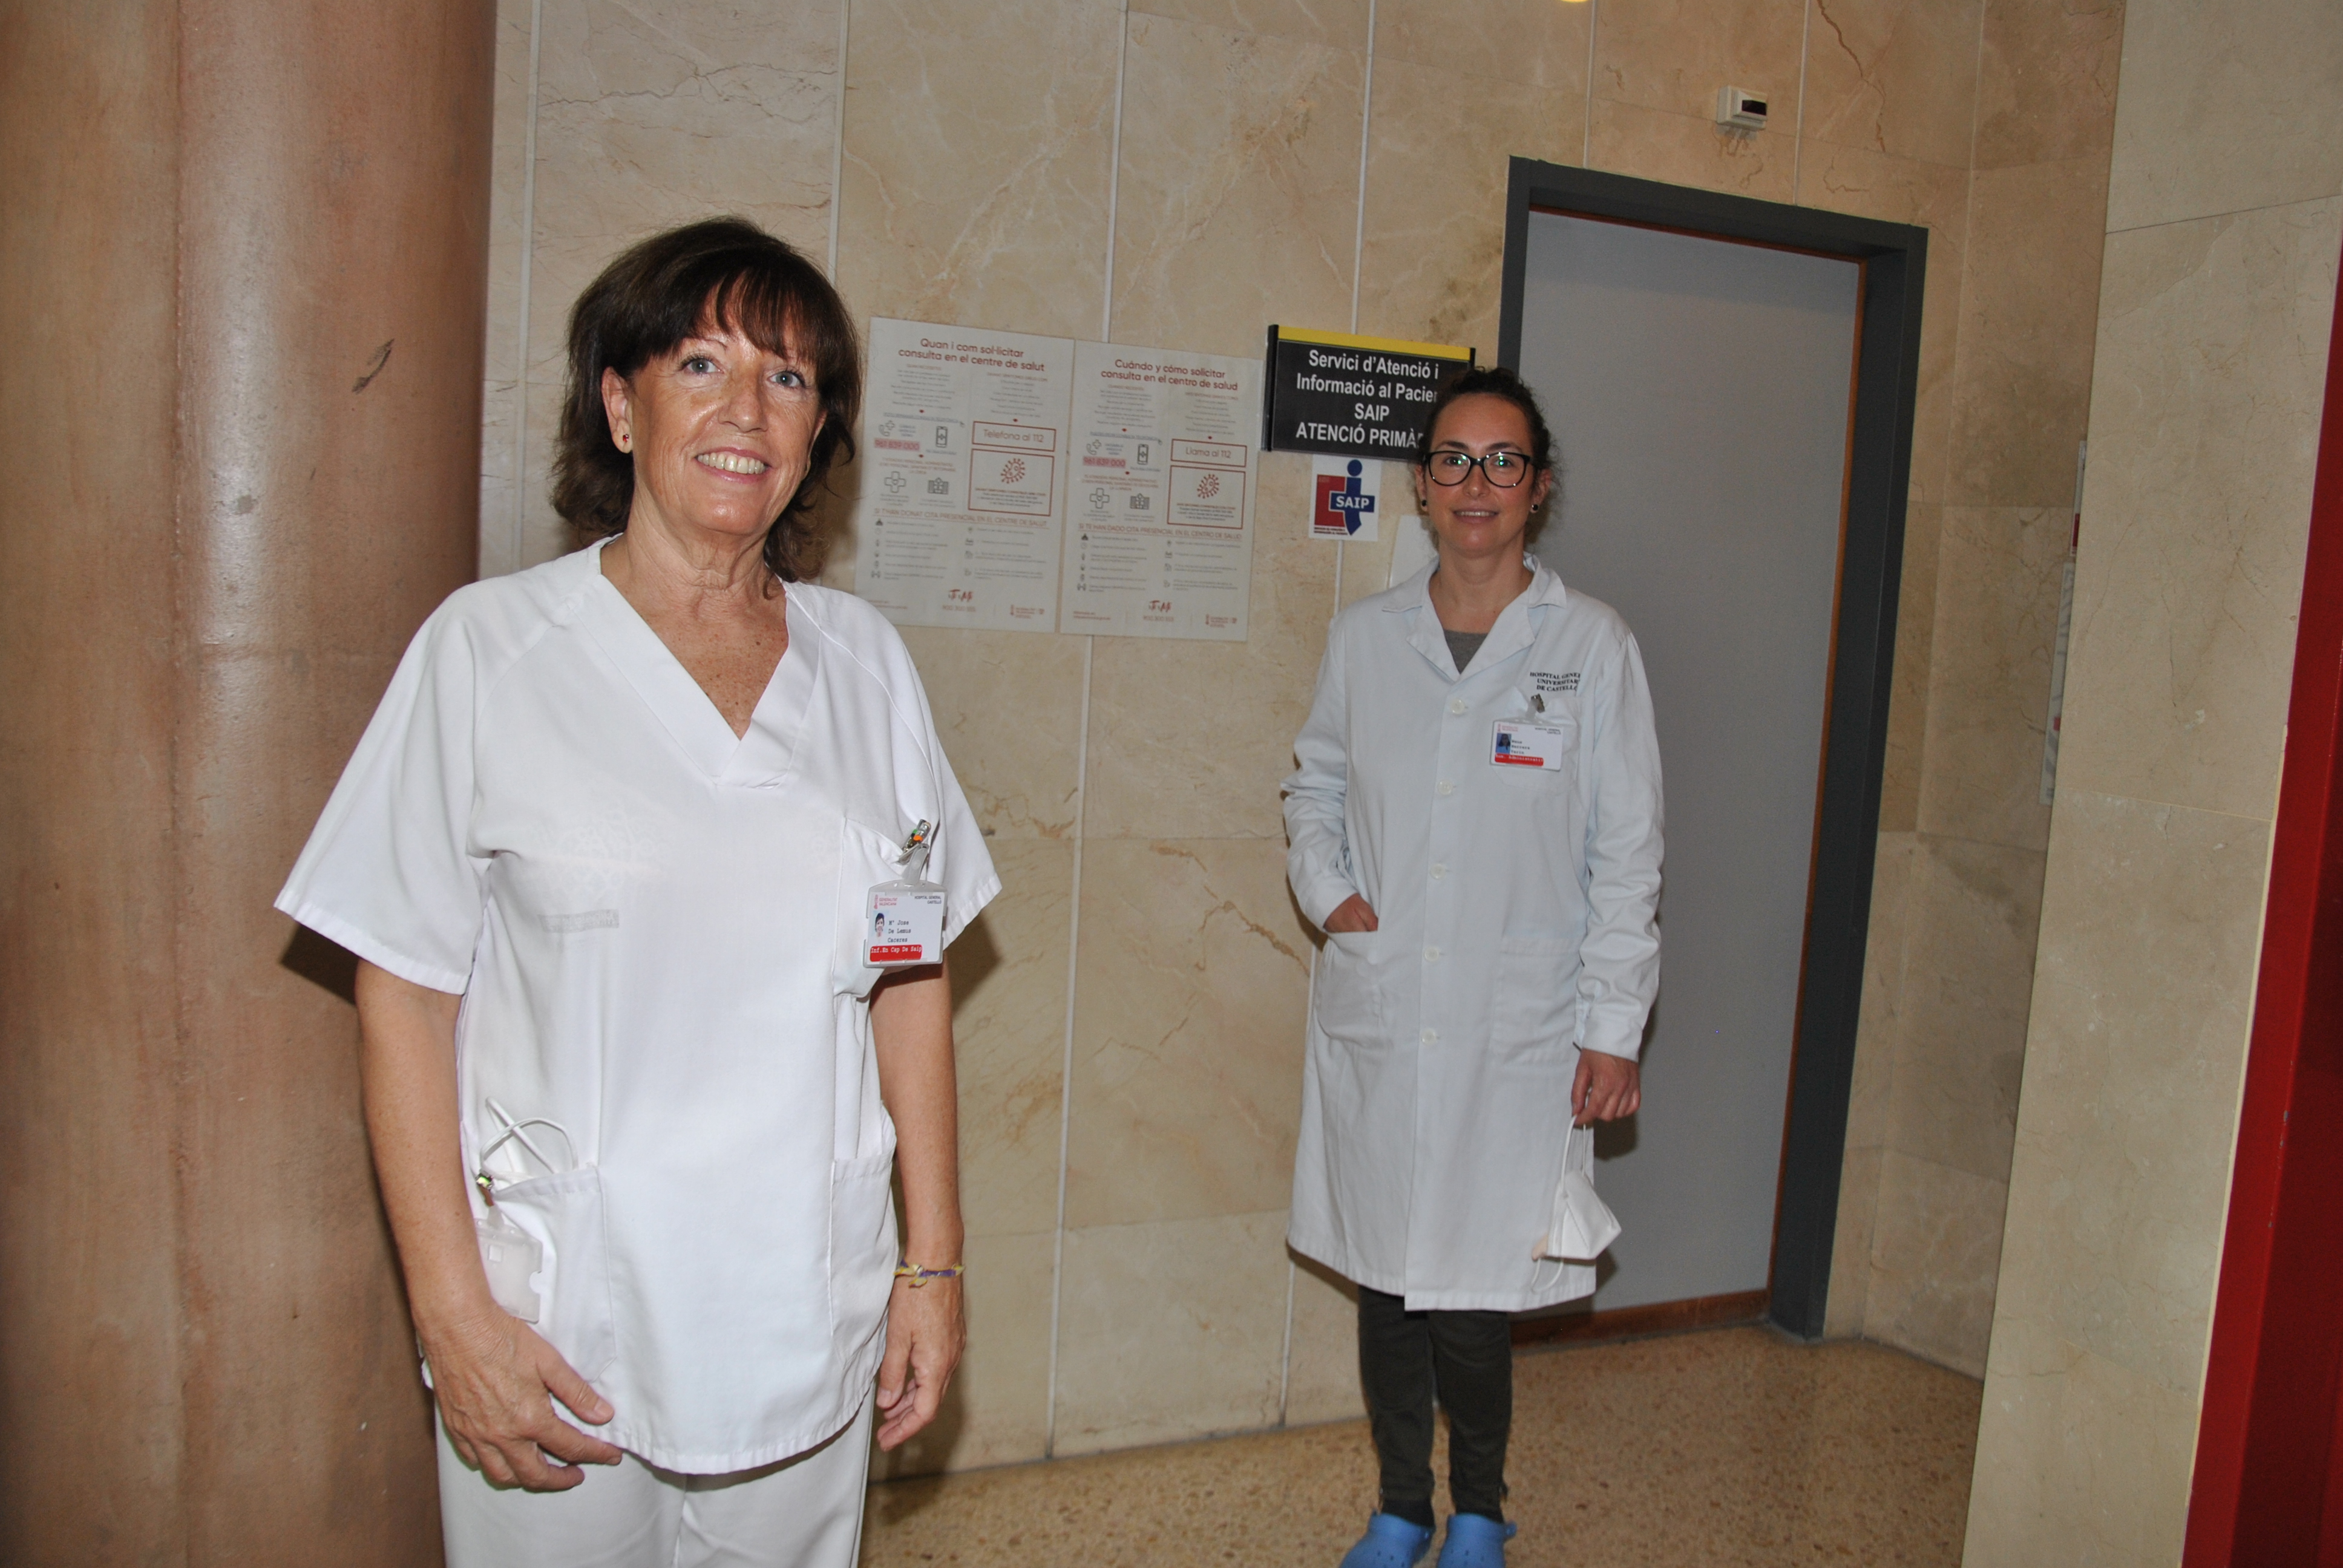 En la imagen aparecen 2 mujeres sanitarias que forman parte del equipo asistencial del Servicio de Atención e Información al Paciente SAIP del Departamento de Salud de Castellón